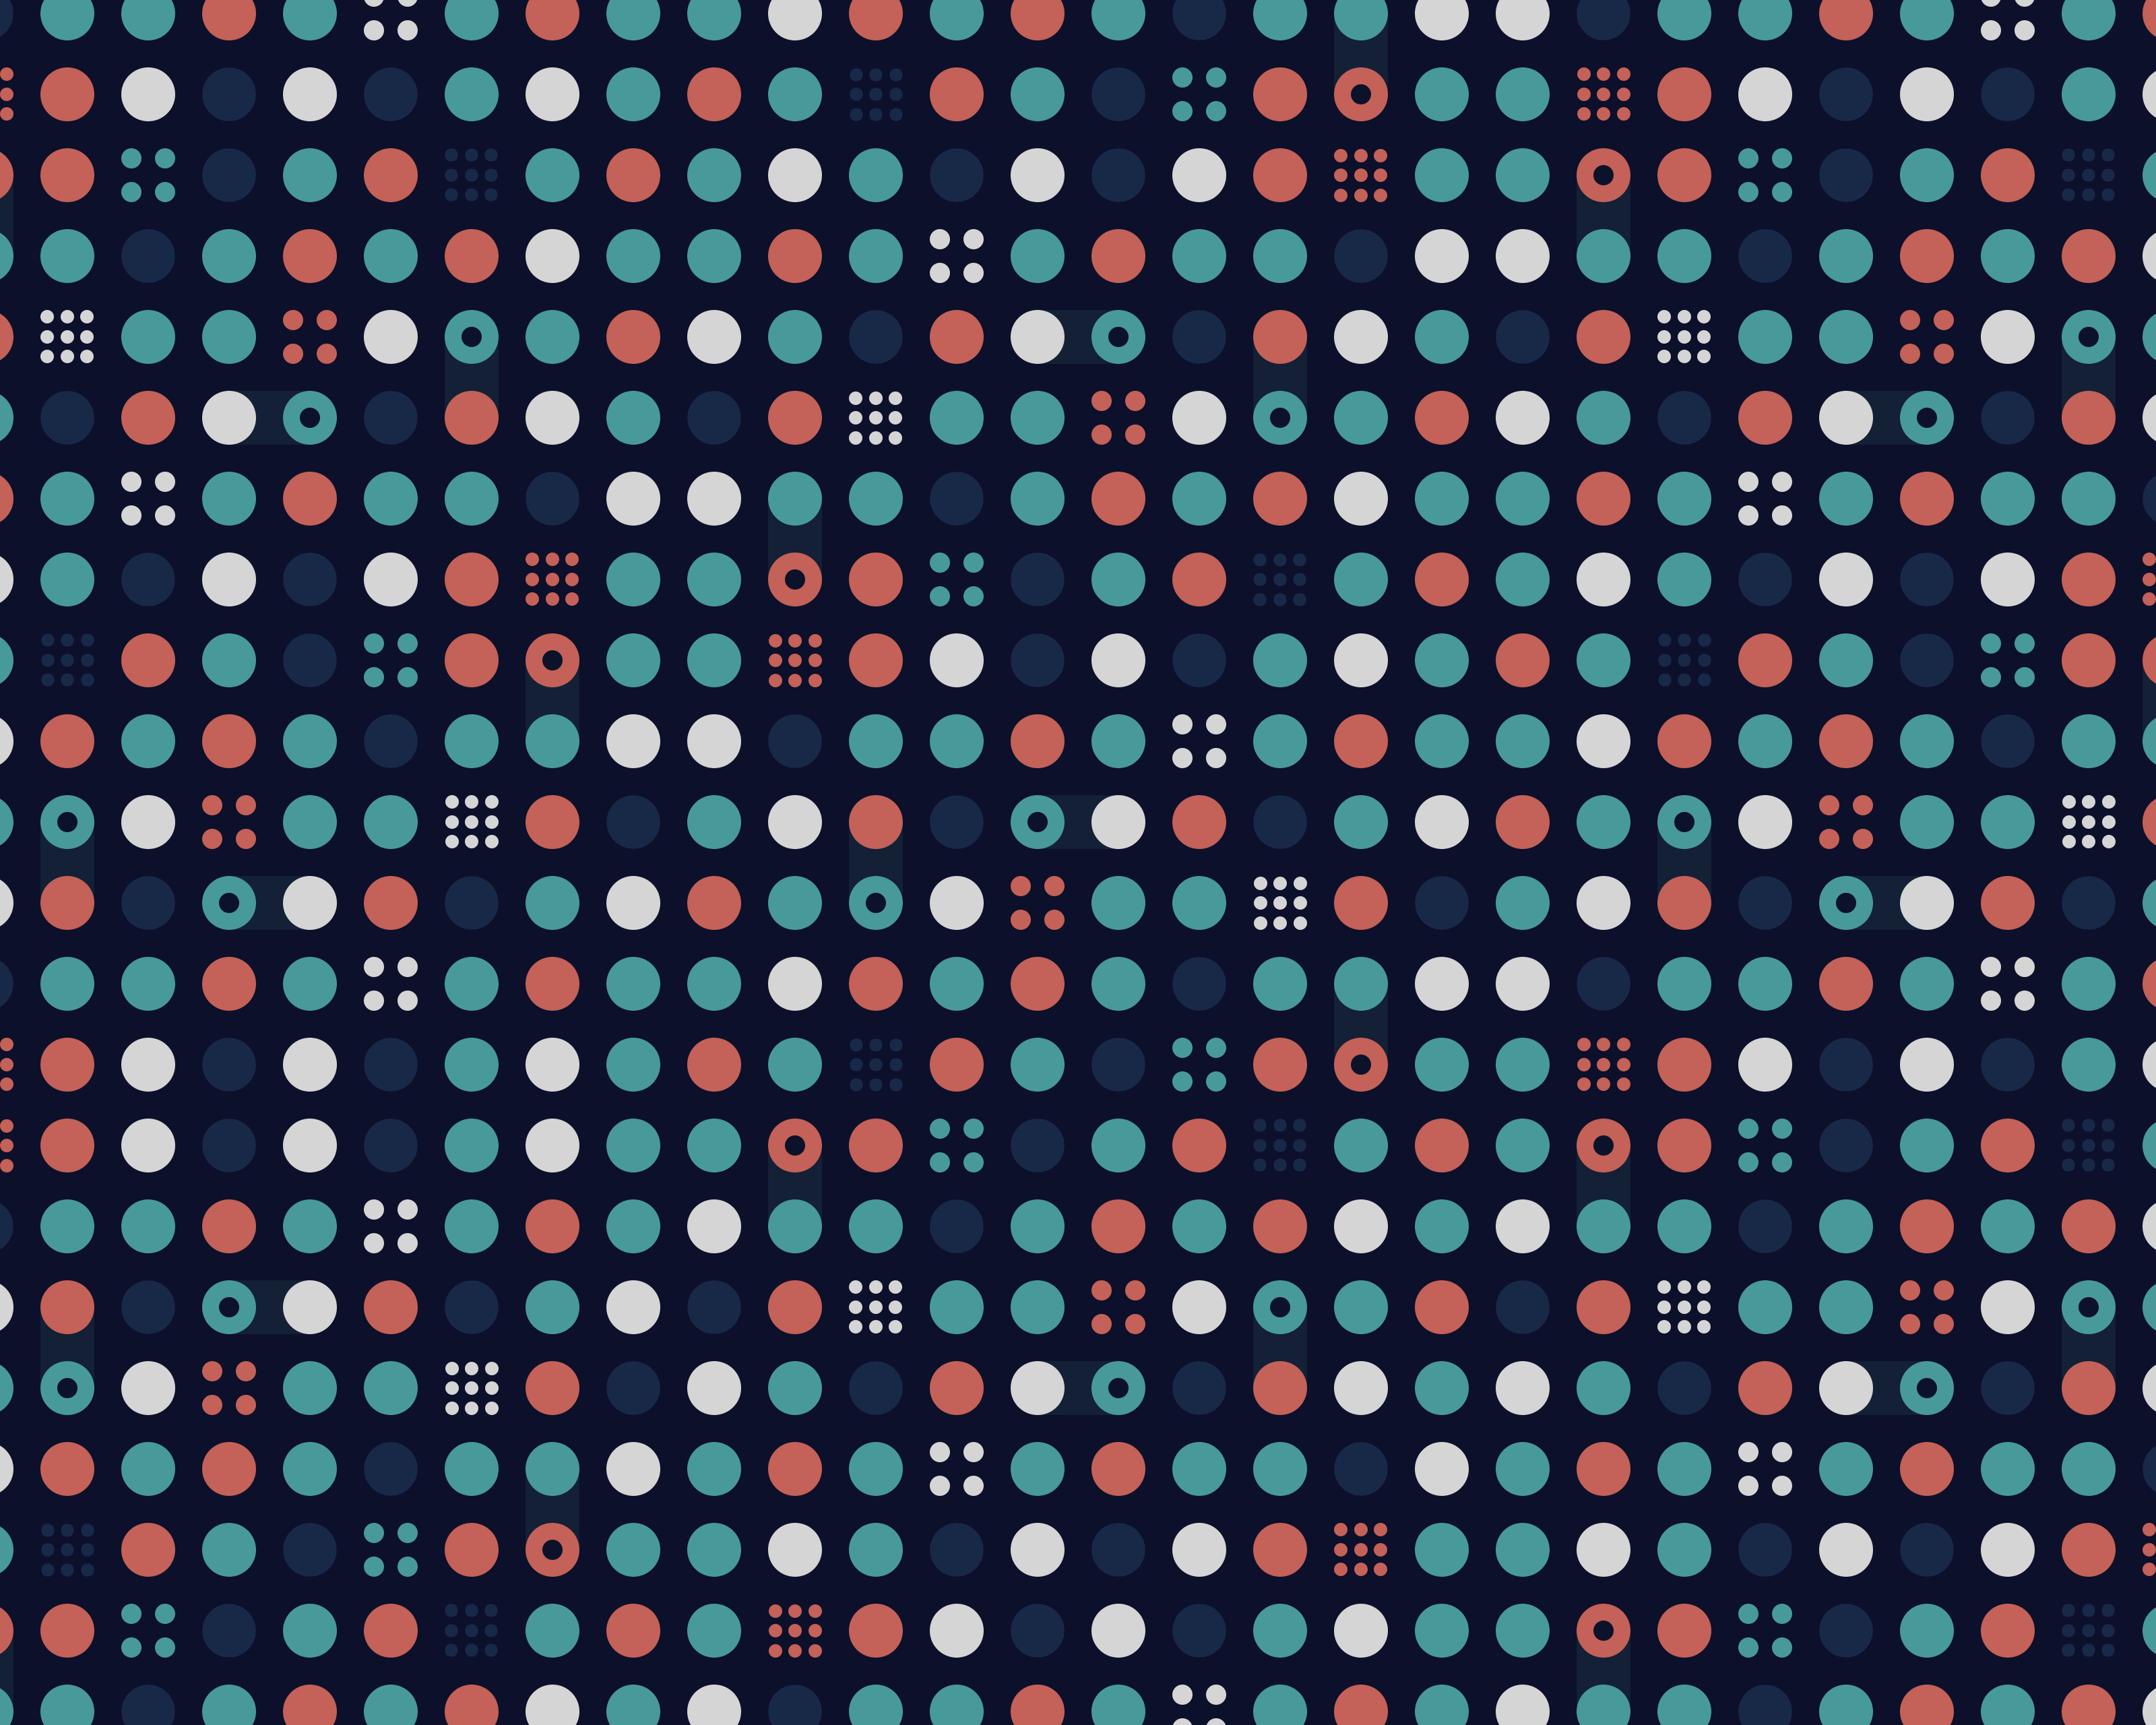 General 3200x2560 pattern abstract digital art dots circle